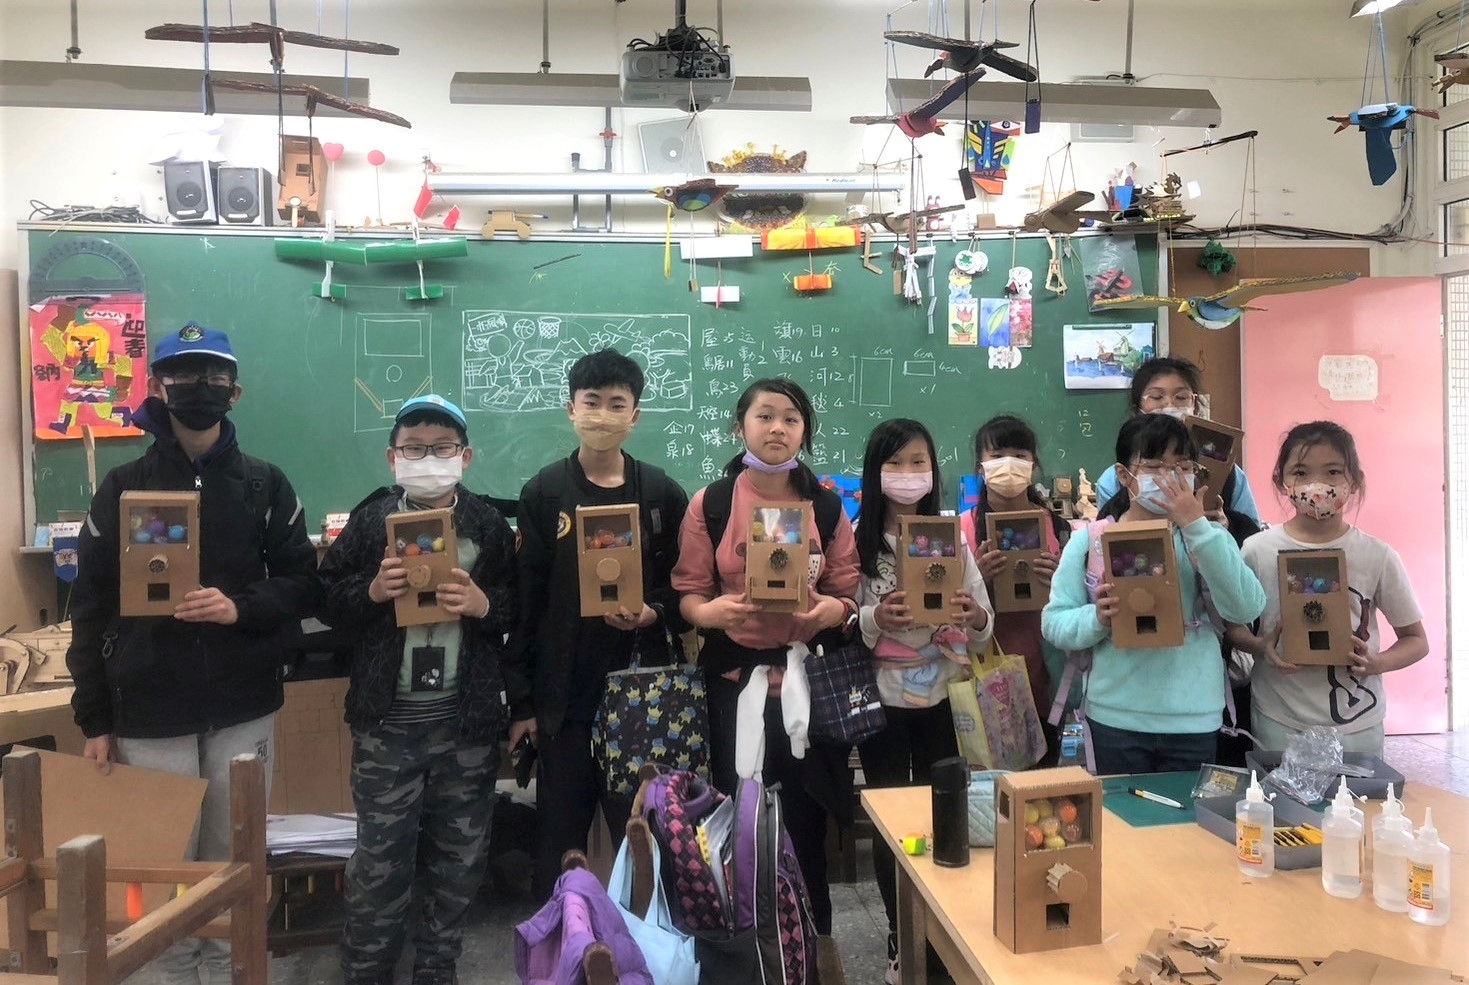 八里國小學生於校內創客課程製作木製扭蛋機.jpg